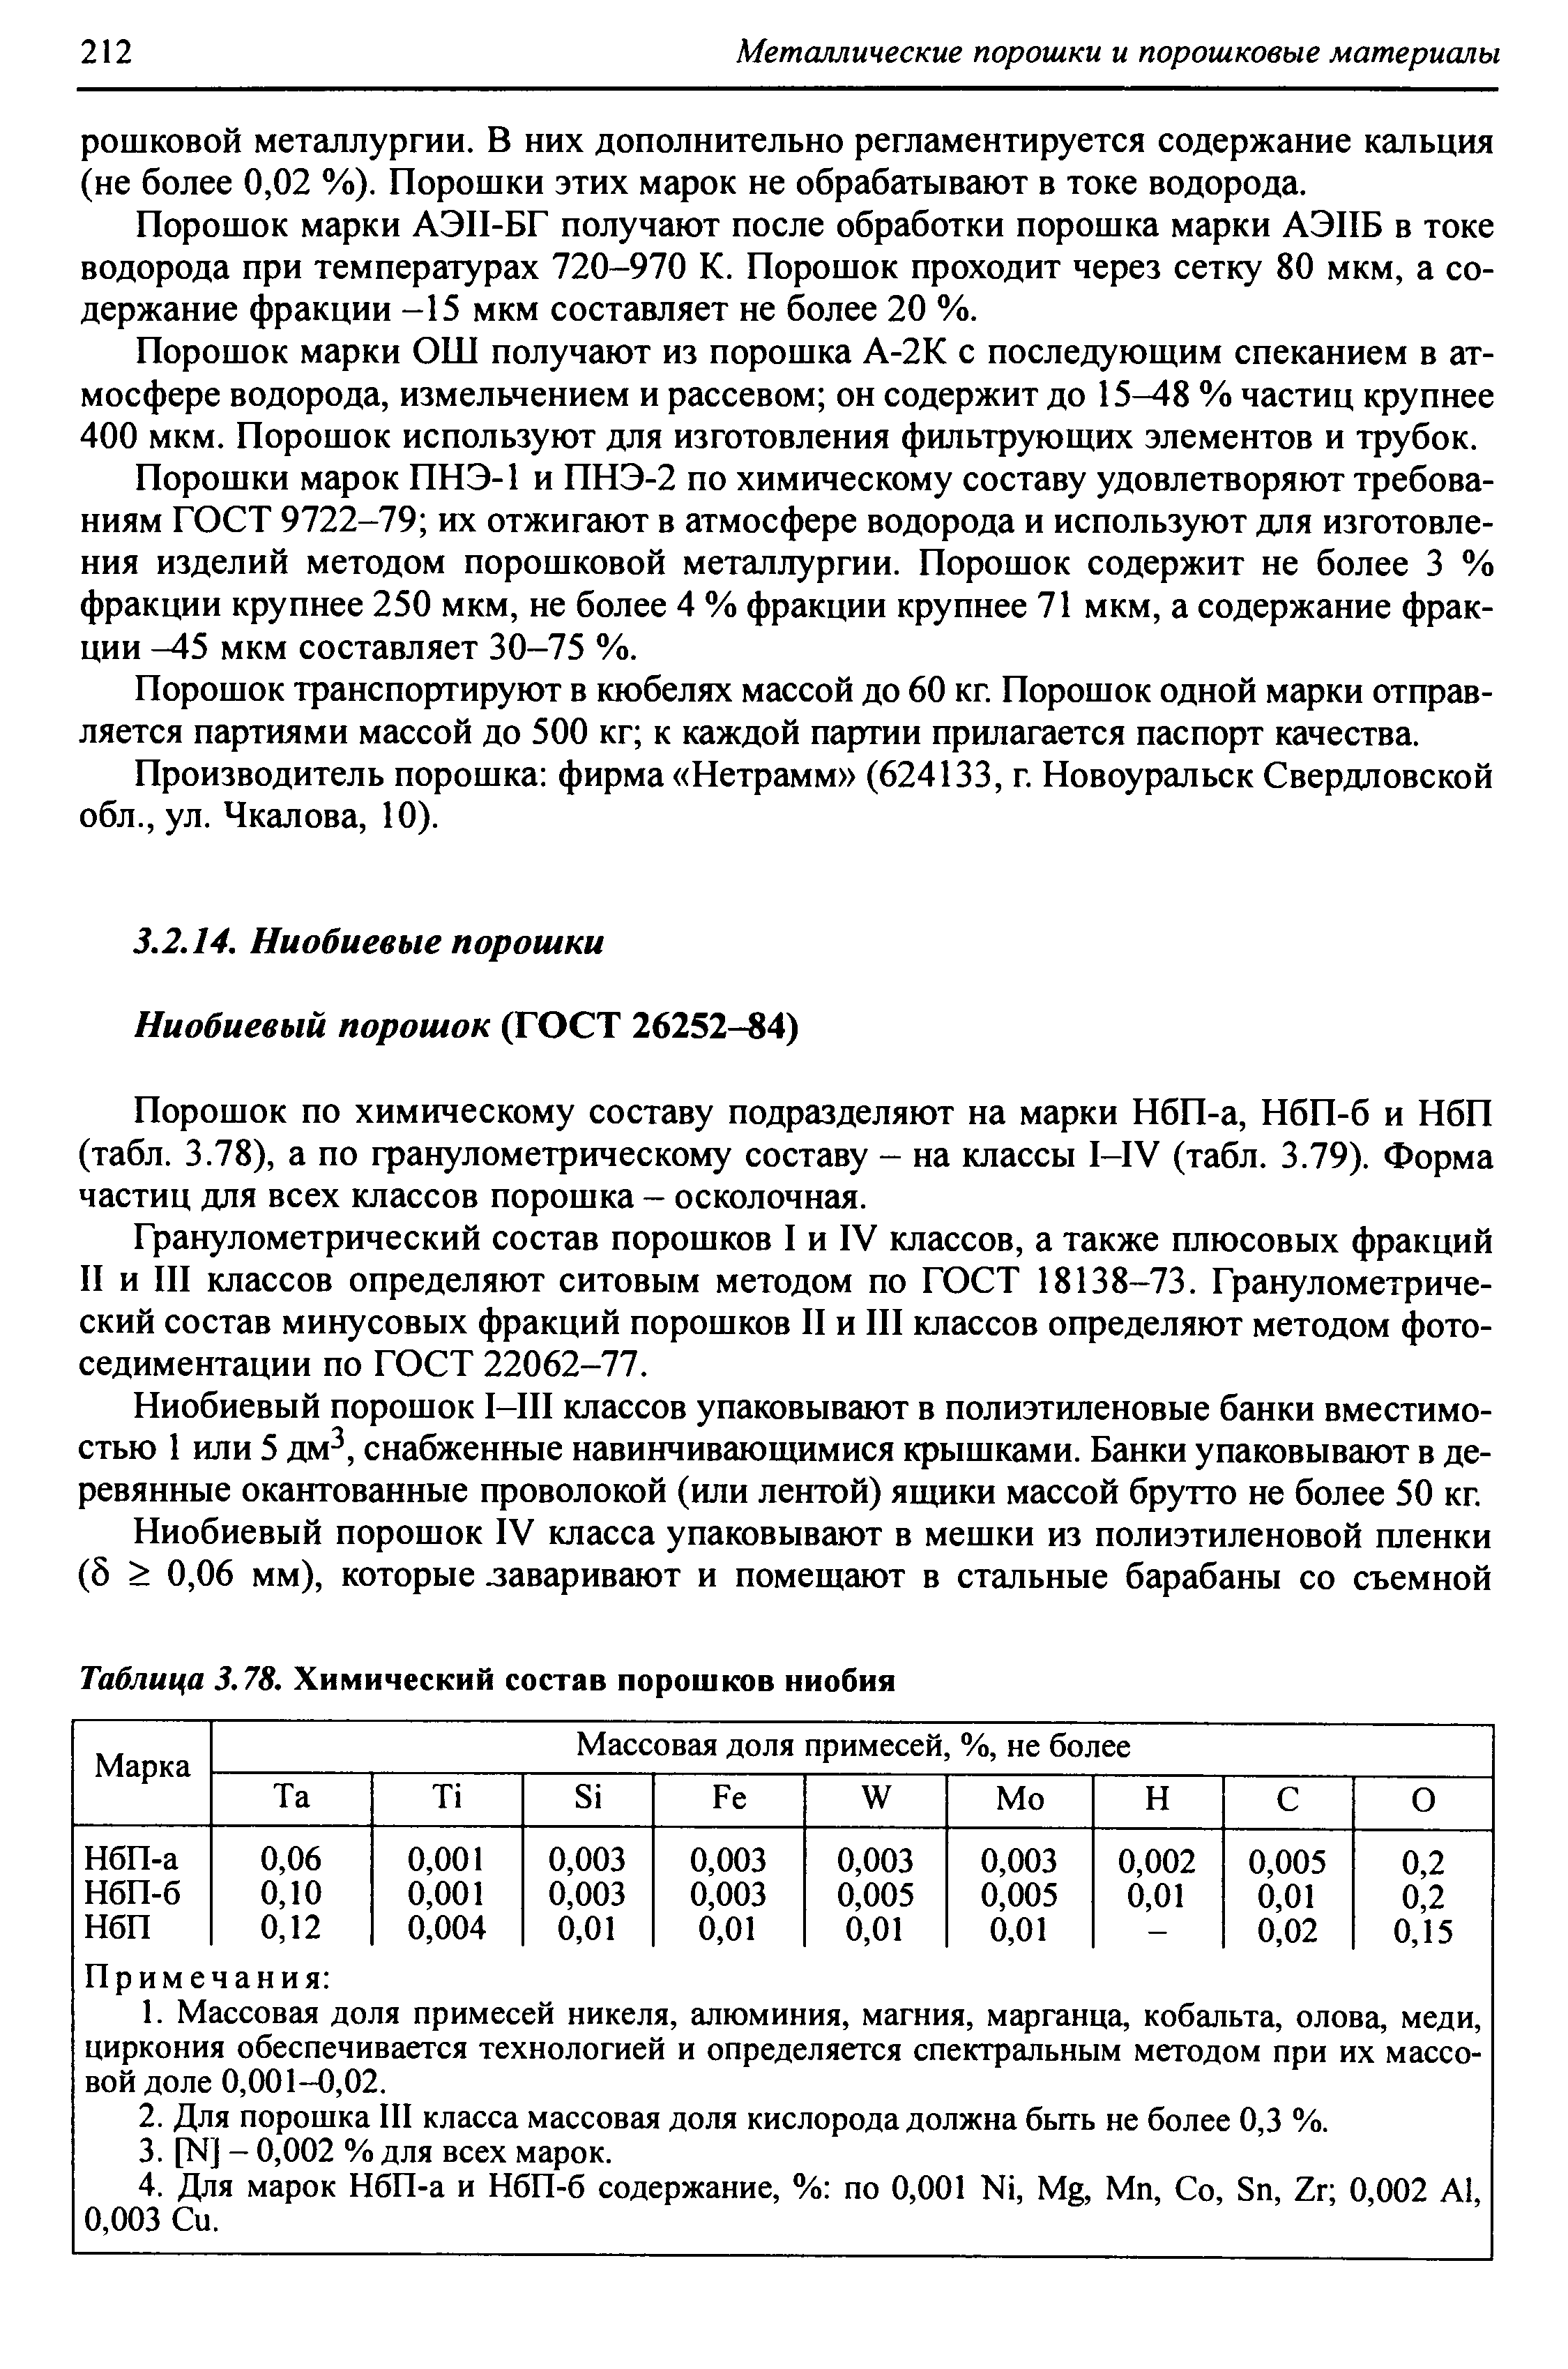 Порошок по химическому составу подразделяют на марки НбП-а, НбП-б и НбП (табл. 3.78), а по фанулометрическому составу - на классы I-IV (табл. 3.79). Форма частиц для всех классов порошка - осколочная.